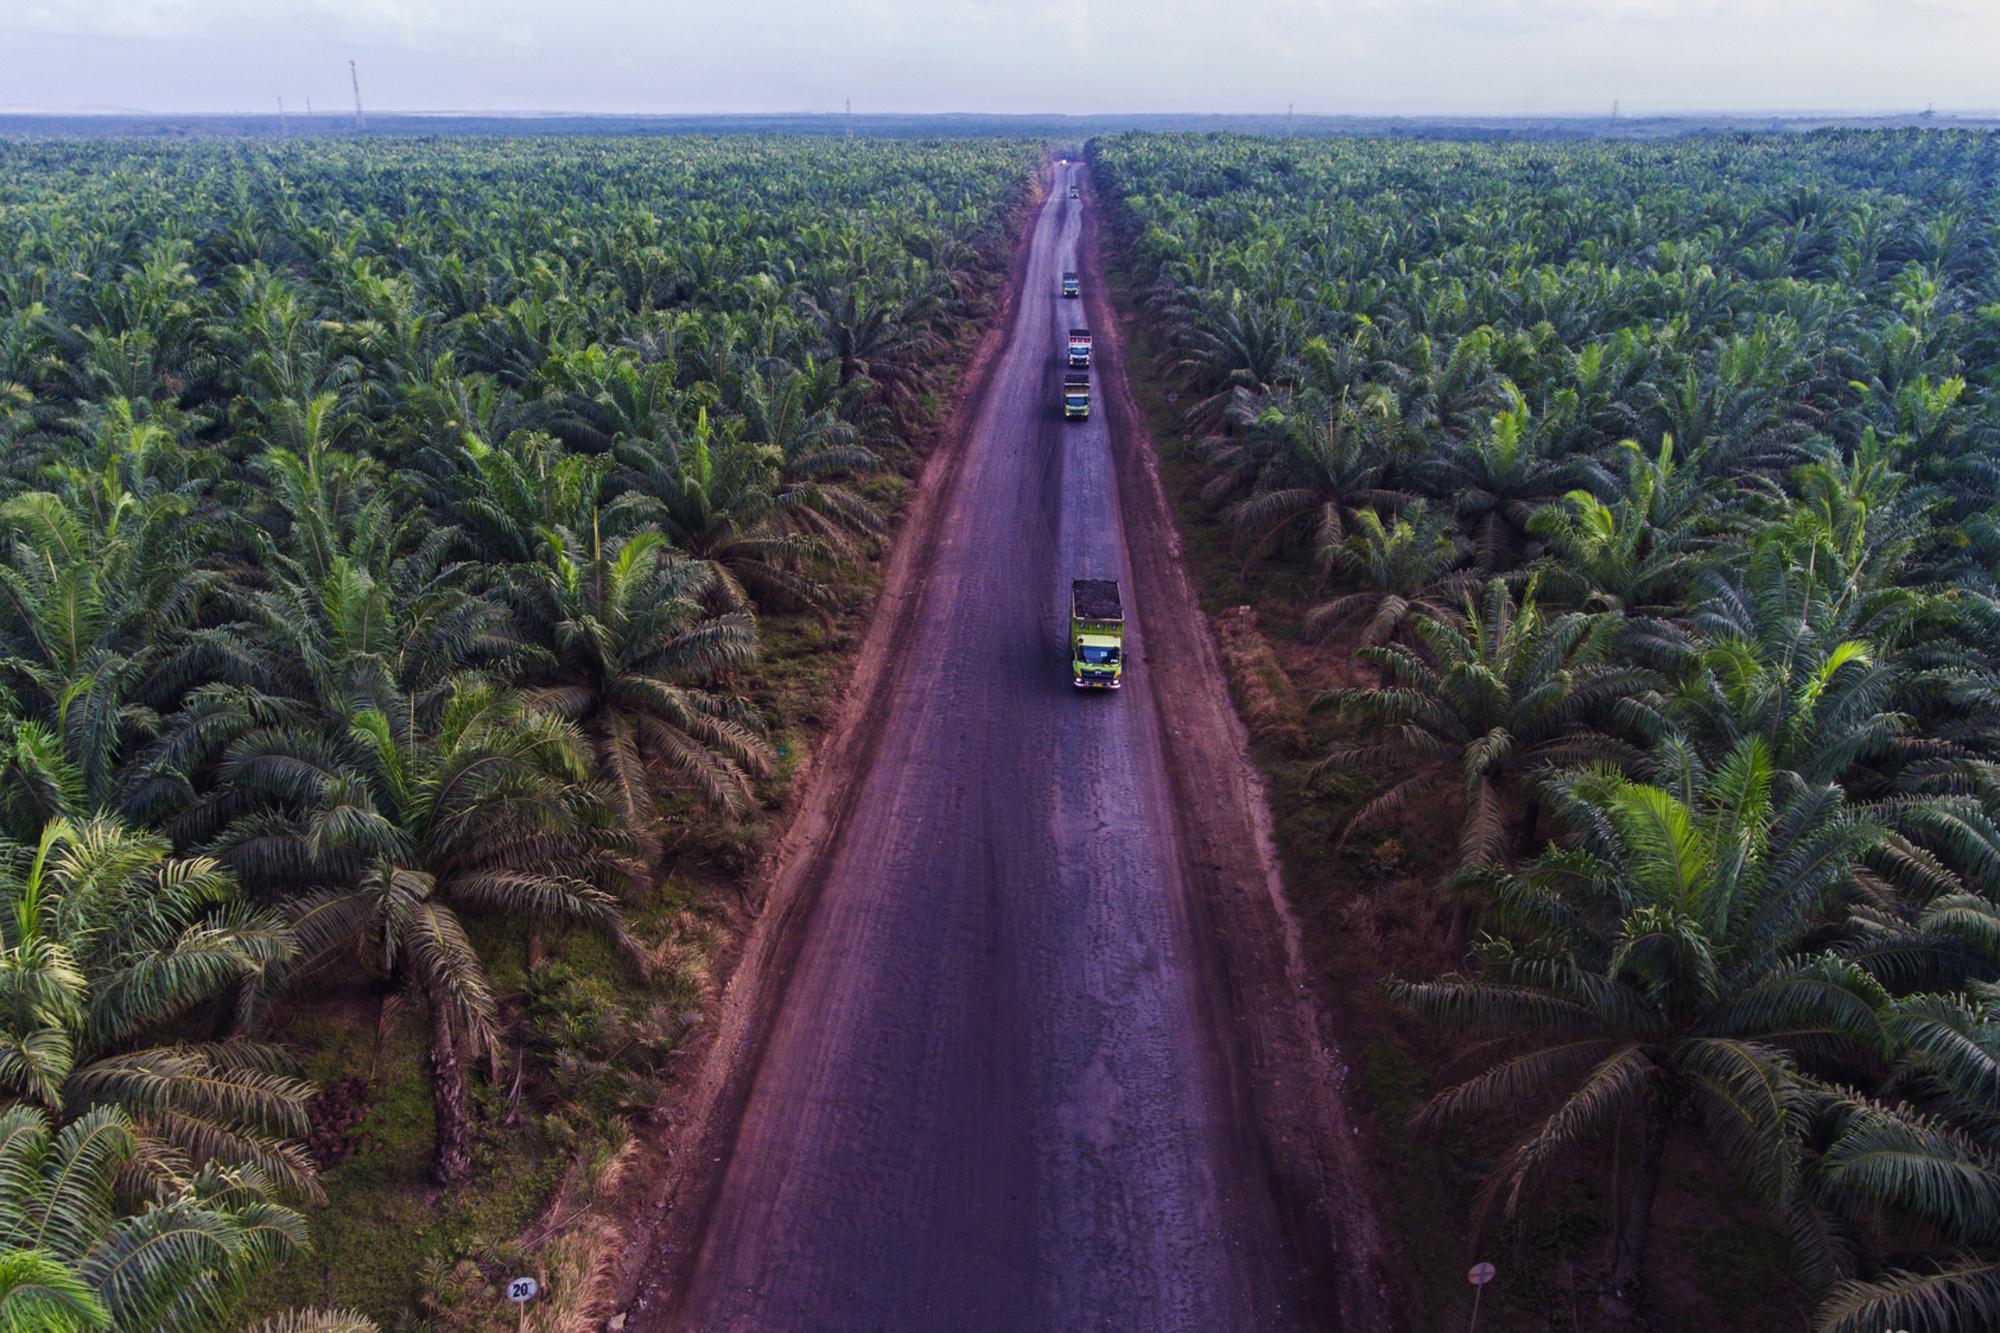 'Verduurzaming is een continu proces zonder eindstation', klinkt het. Net als de westerse vraag naar palmolie.